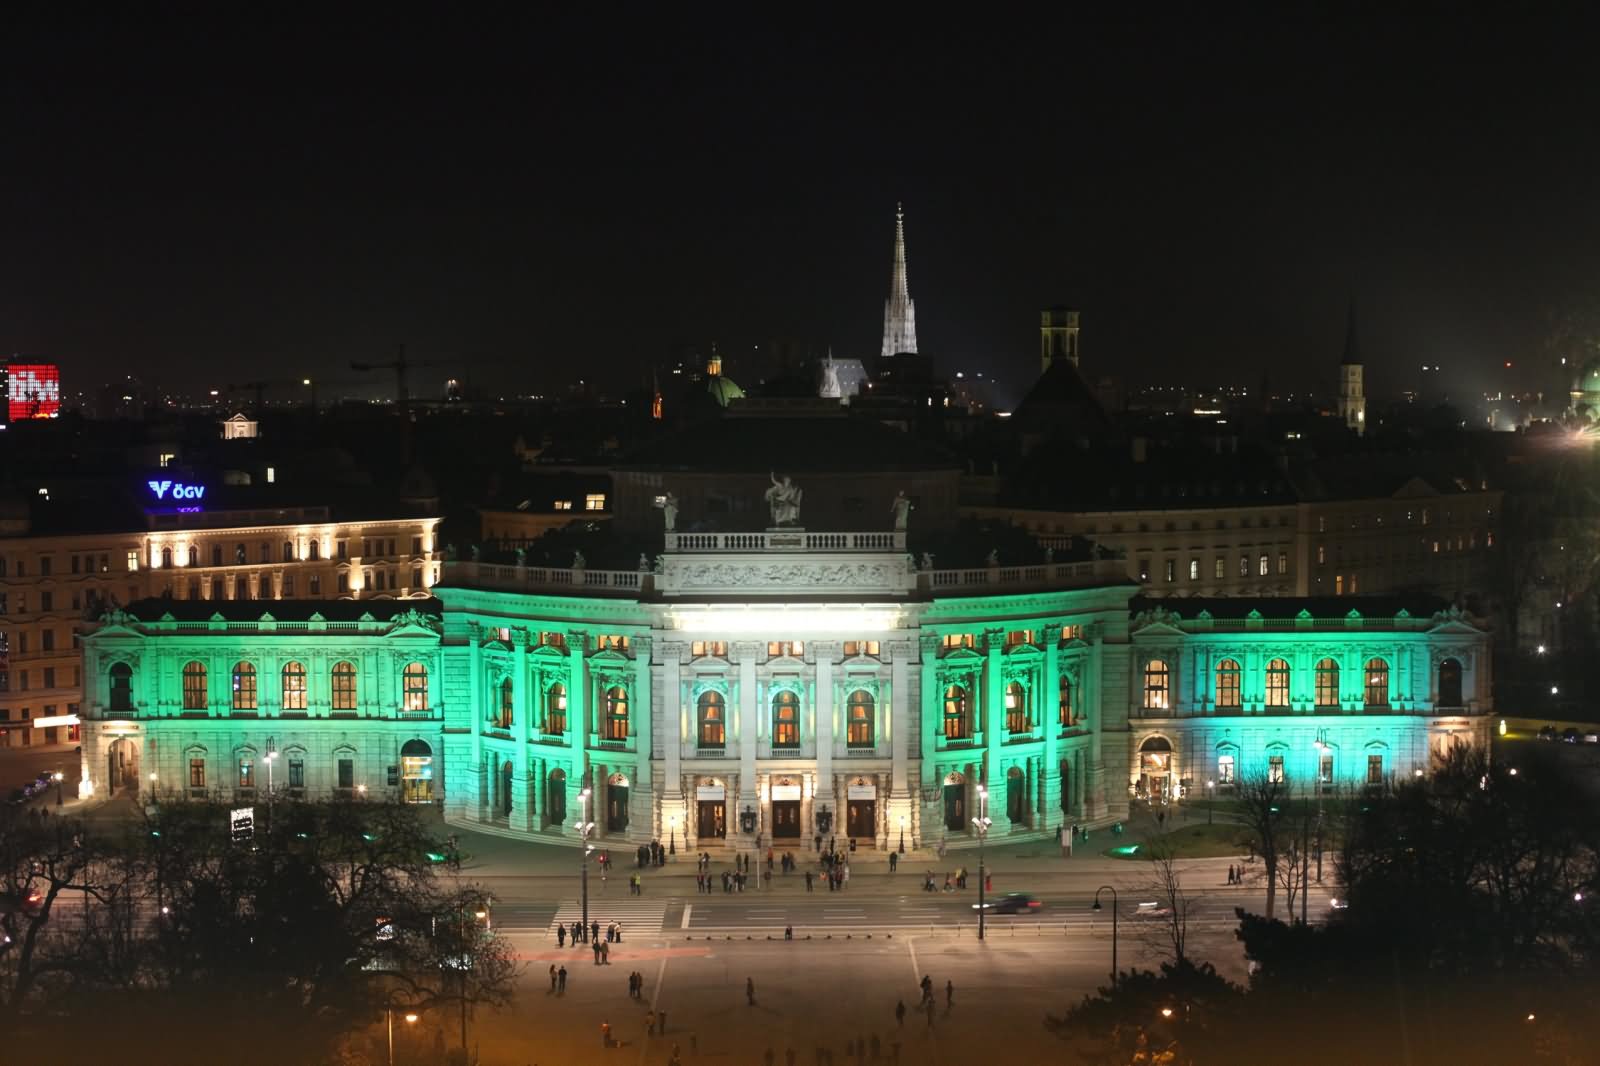 The Burgtheater Illuminated In Vienna